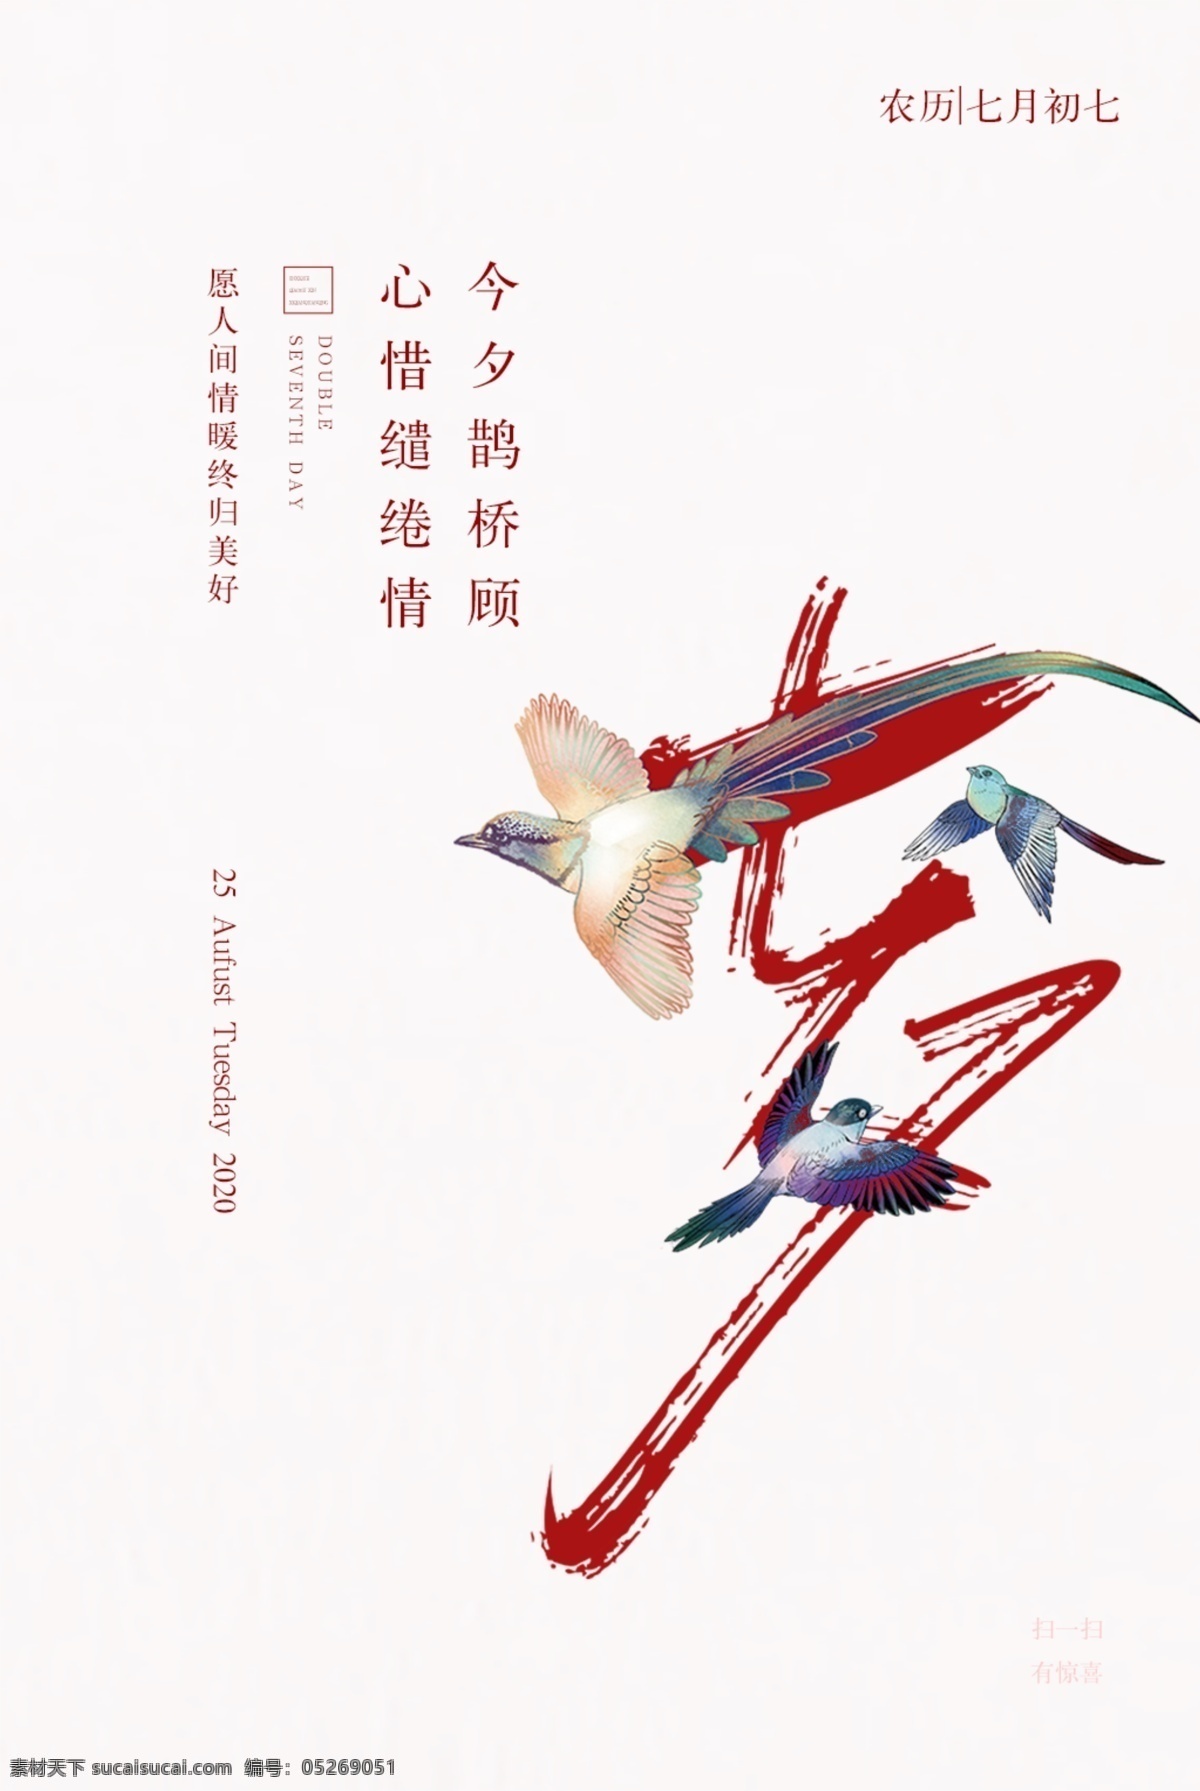 七夕 传统节日 促销活动 海报 传统 节日 促销 活动